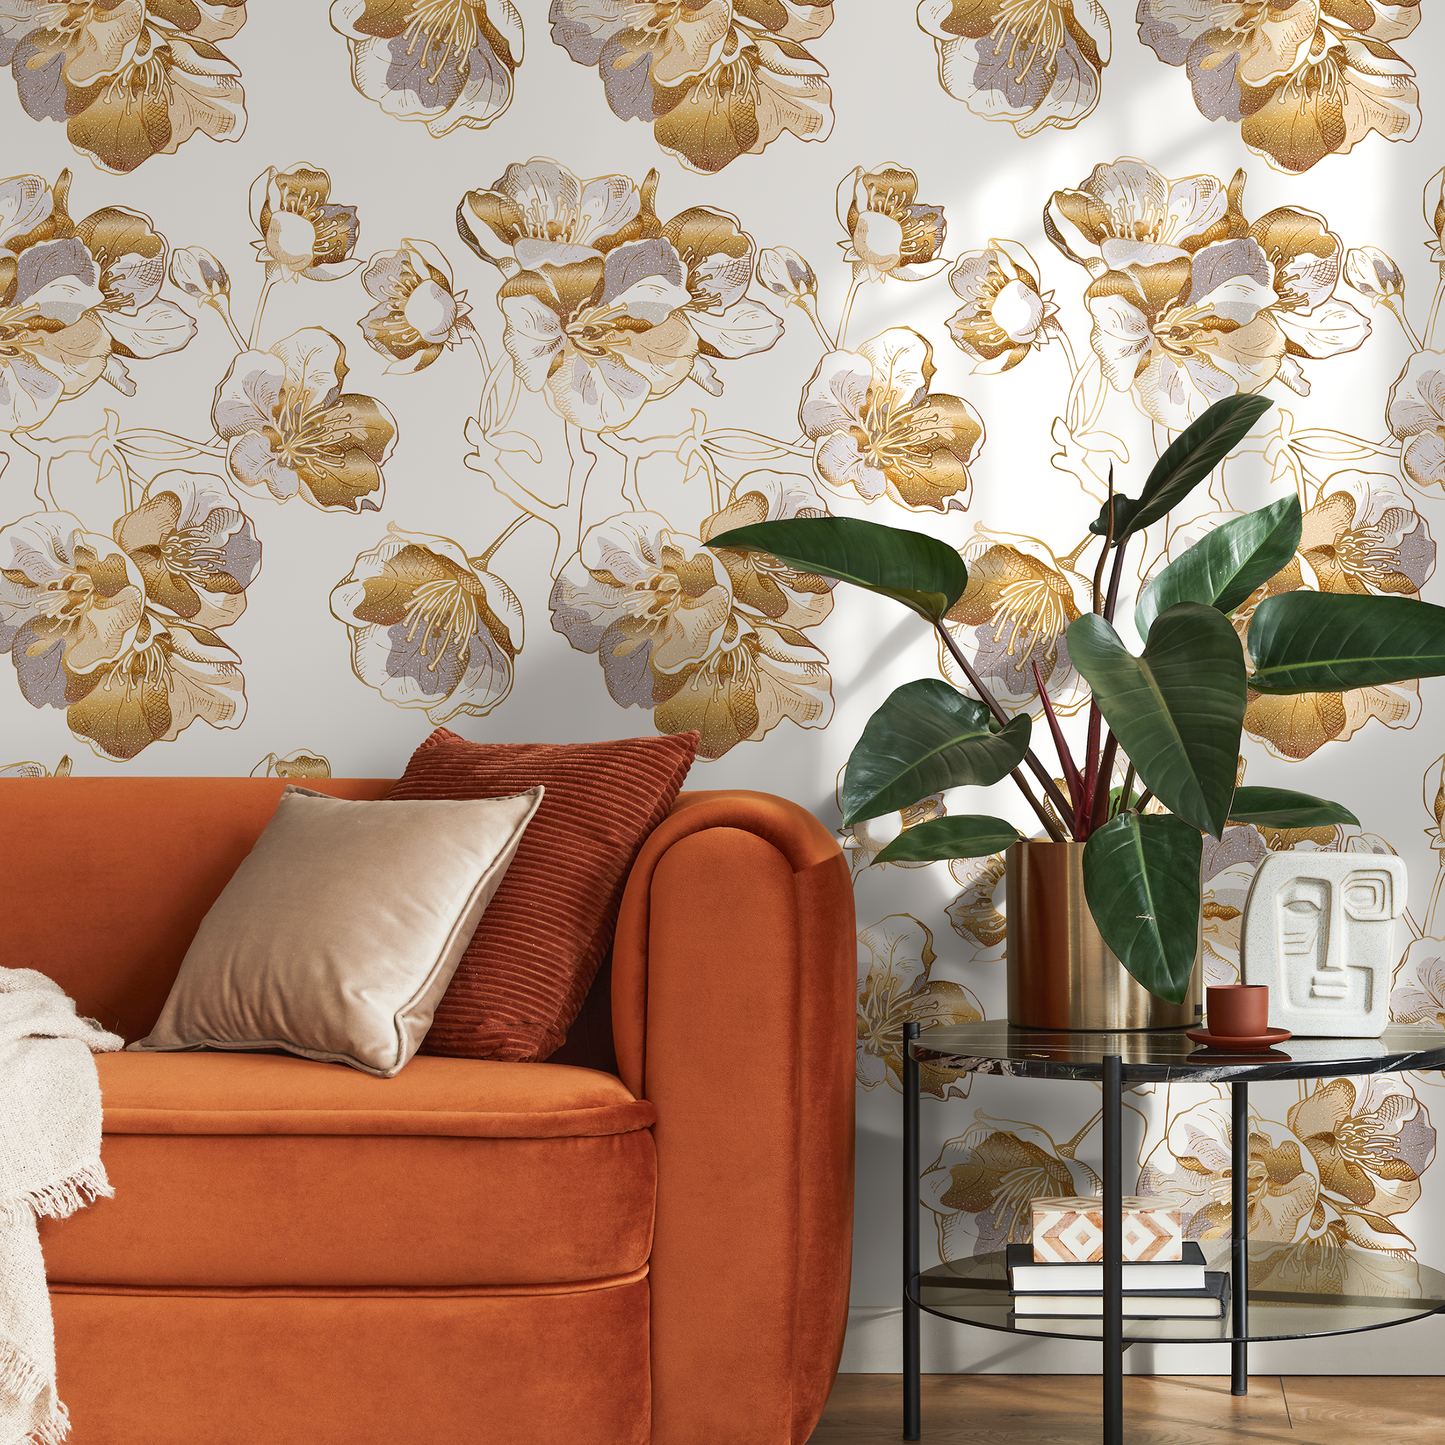 Removable Wallpaper, Scandinavian Wallpaper, Minimalistic Wallpaper, Peel and Stick Wallpaper, WallPaper, Non Metallic Gold Flowers - A979